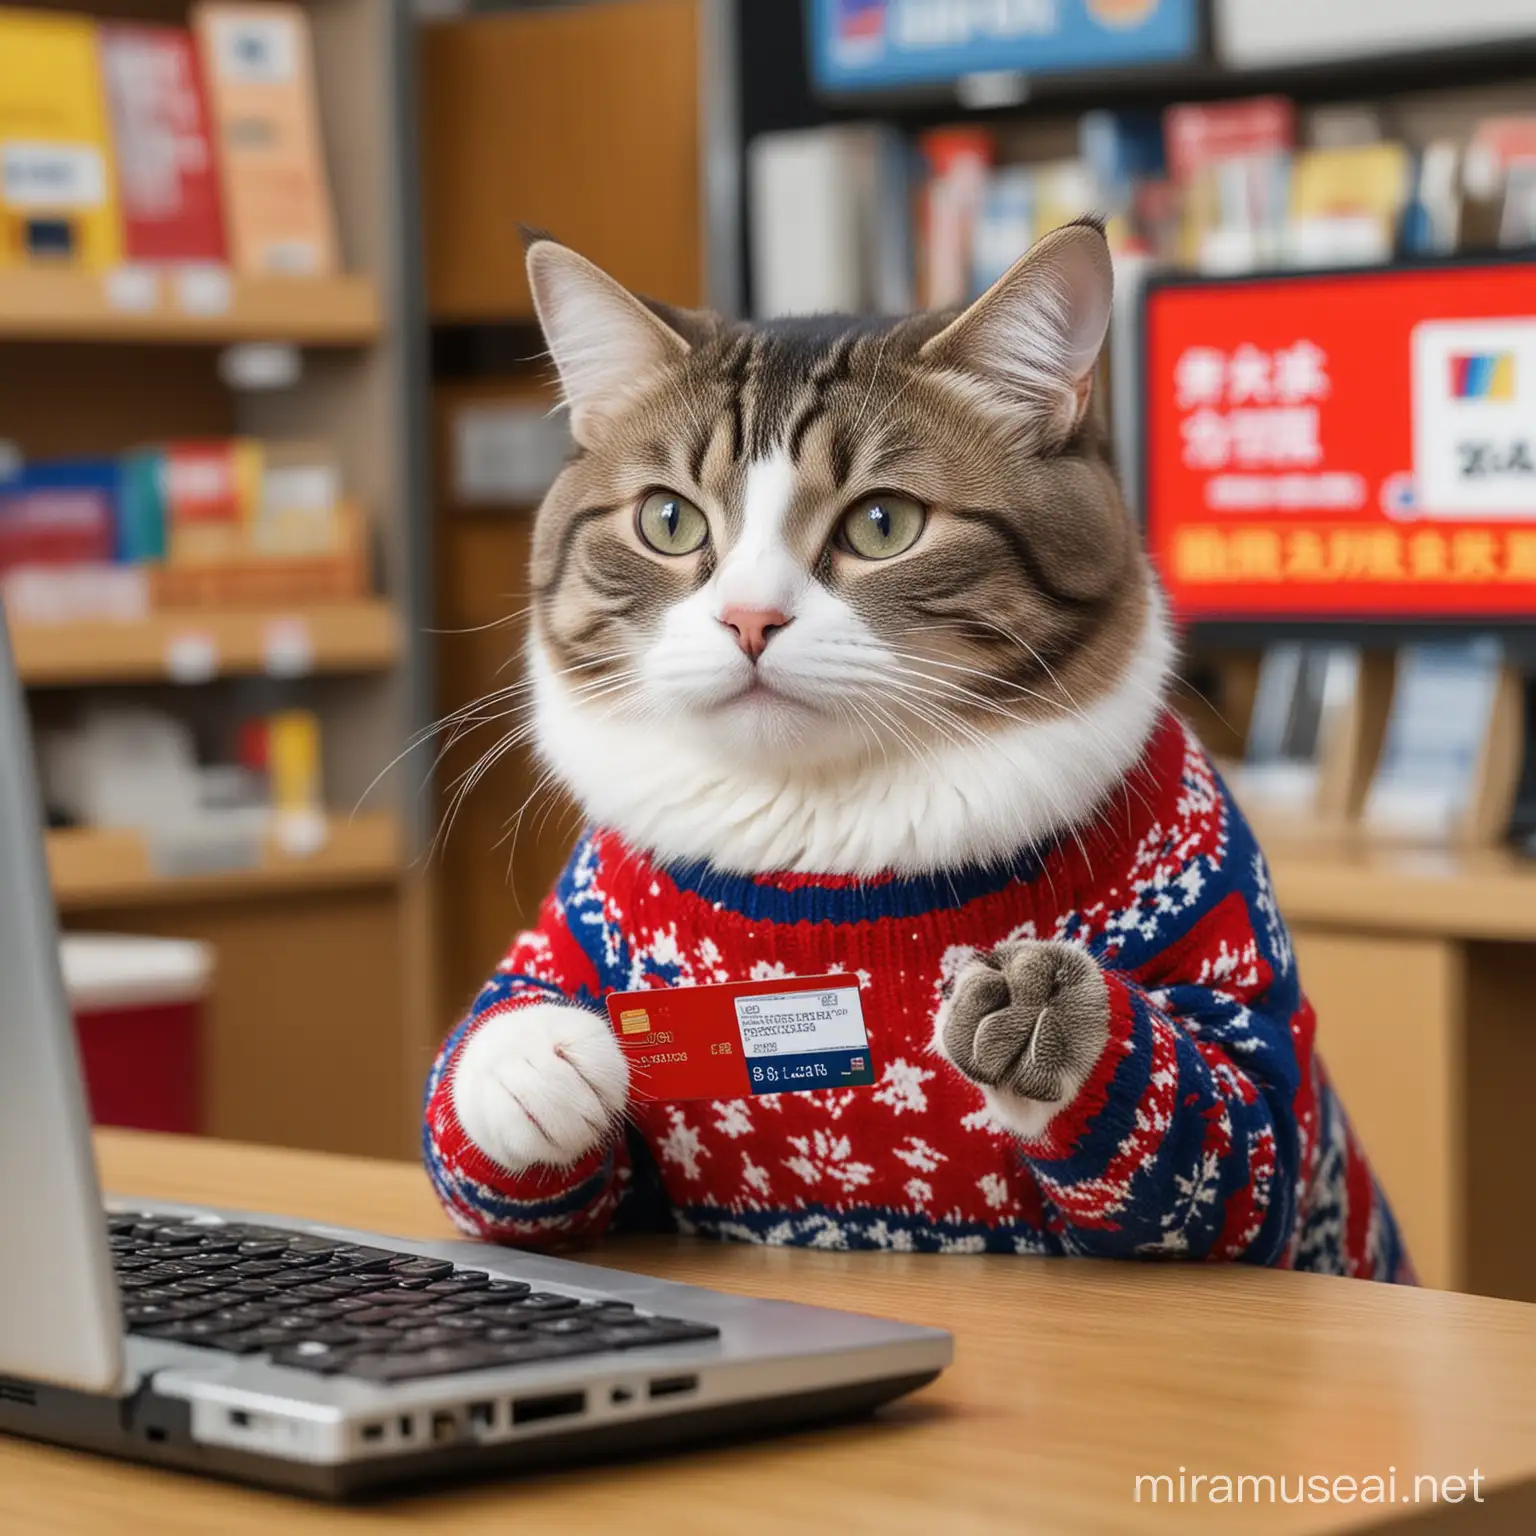 Кот в свитере за компьютером оплачивает покупки в китайском магазине банковской картой UnionPay. Банковскую карту кот держит в лапе. 

В хорошем качестве, без водяных знаков.